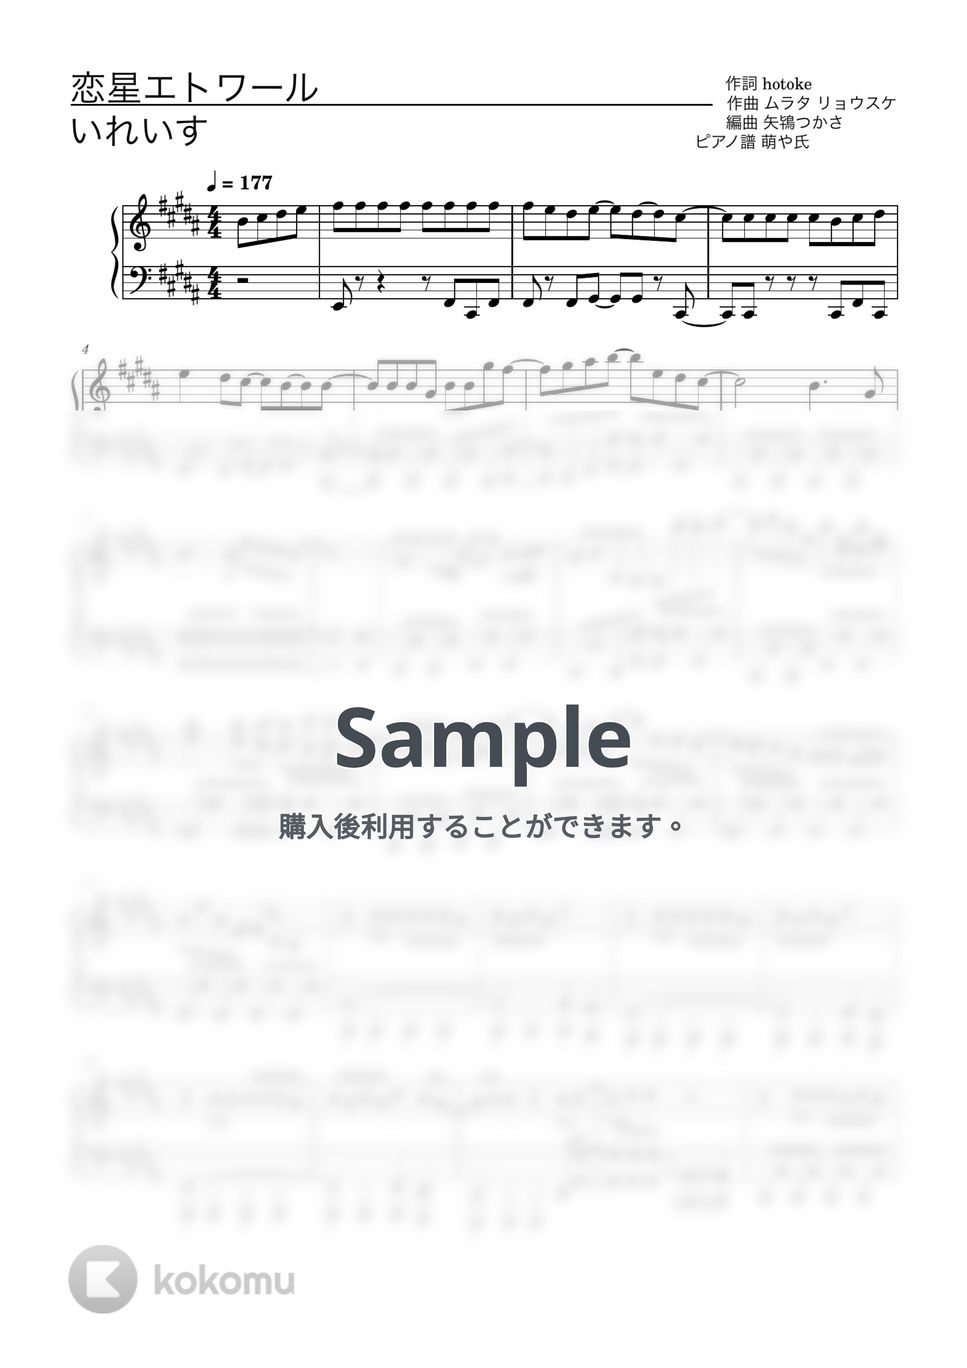 いれいす - 恋星エトワール (ピアノソロ譜) by 萌や氏